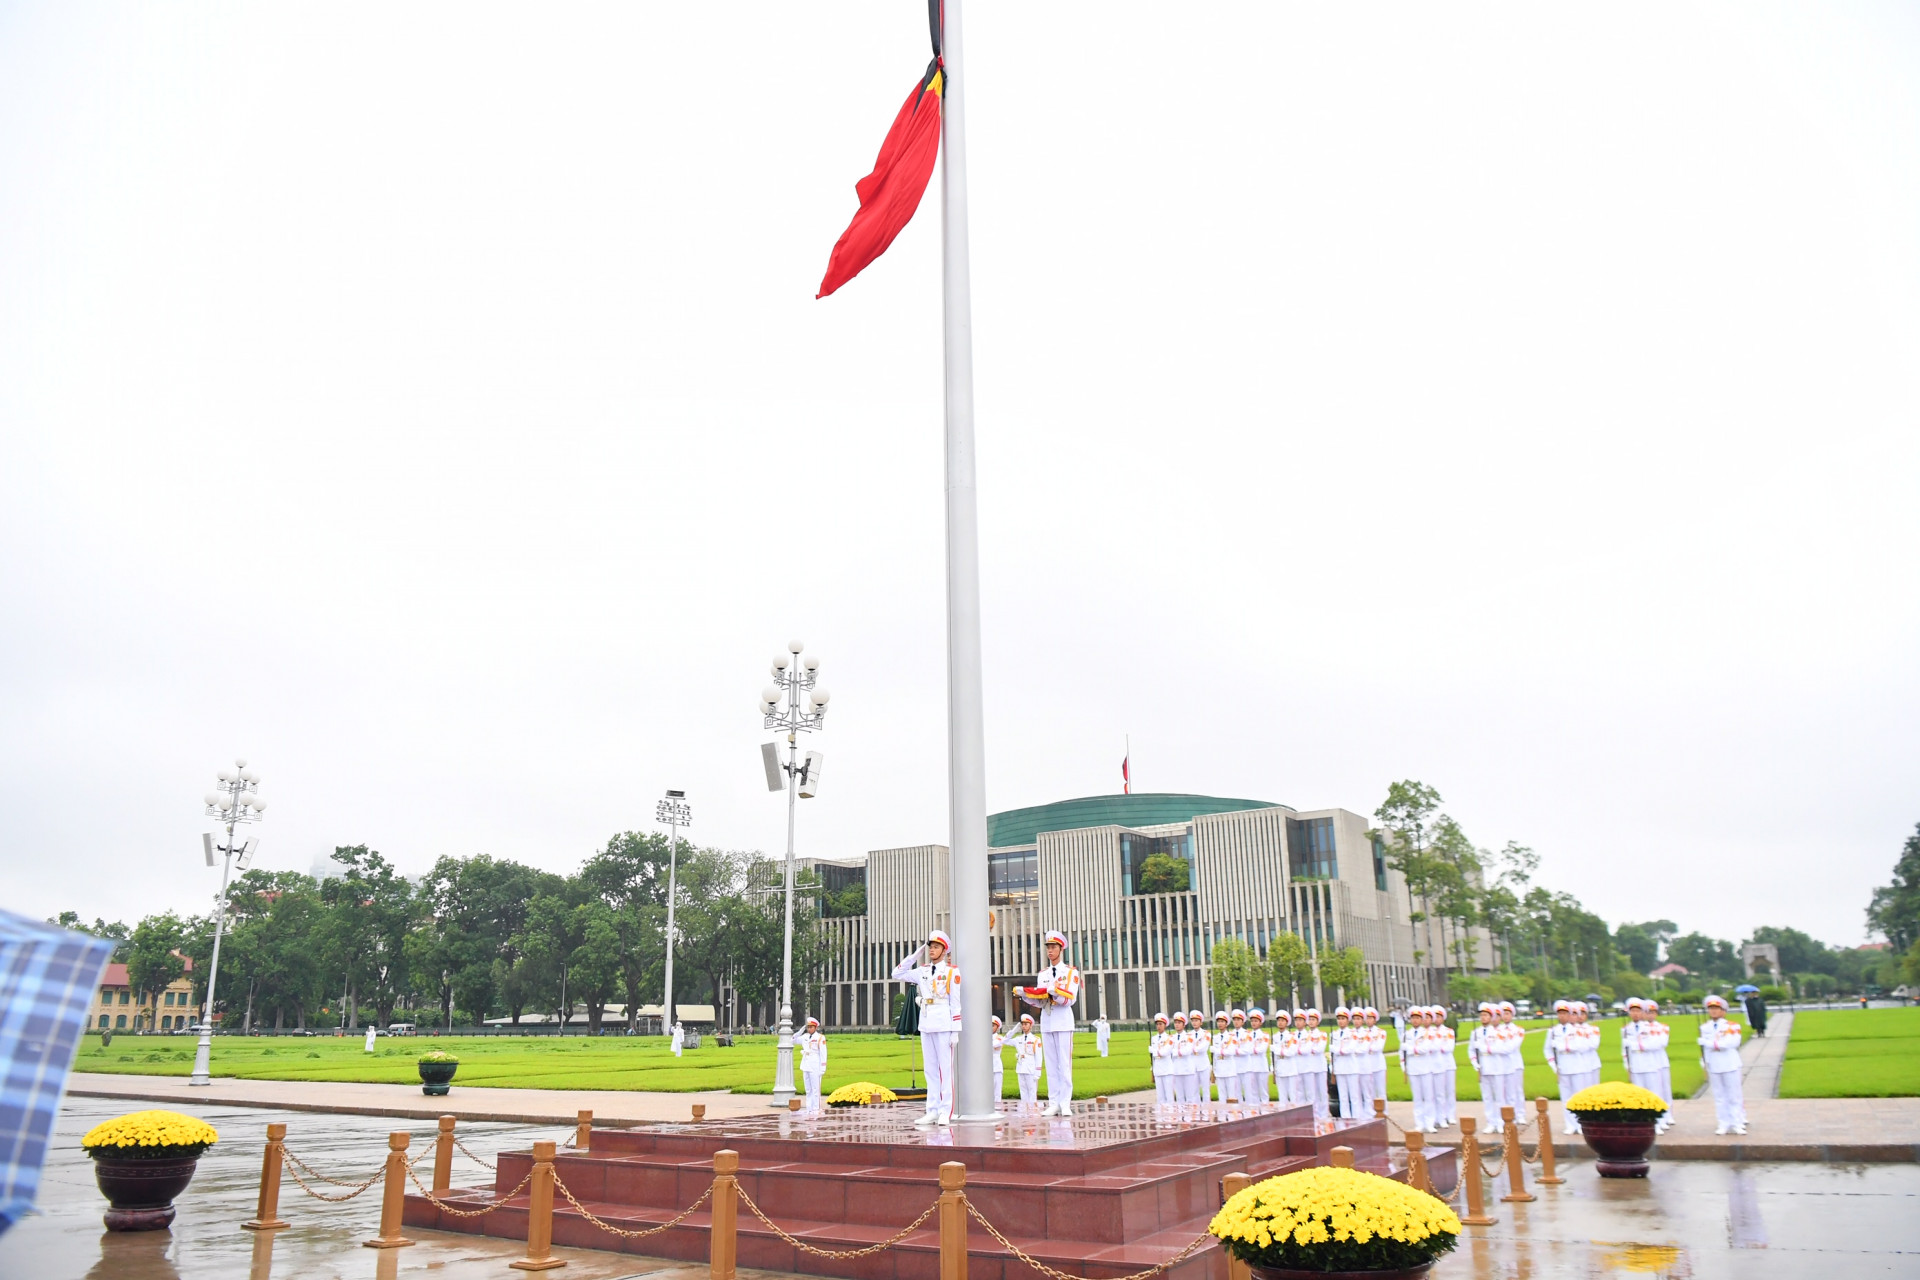 Linh cữu nguyên Tổng Bí thư Lê Khả Phiêu được quàn tại Nhà tang lễ quốc gia, số 5 Trần Thánh Tông, Hà Nội. Ảnh: VGP/Đoàn Bắc